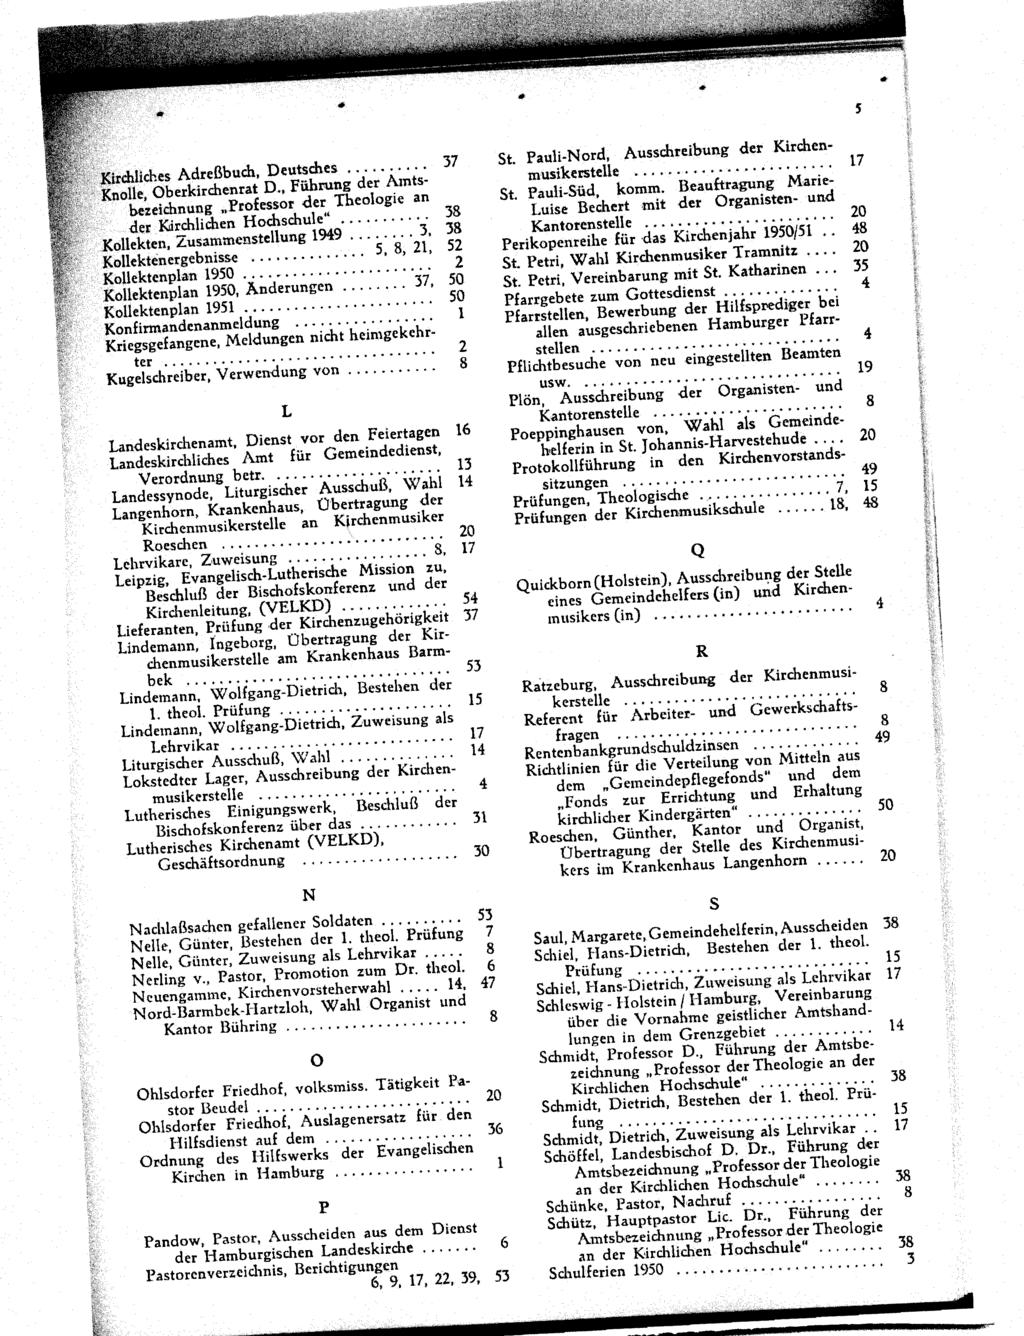 Kirdlliches Adreßbuch, Deutsches......... 37,' Knolle, Oberkirchenrat D., Führung der Amtsbezeichnung Professor der Theologie an der l<drchlichen Hochschule"........... 38 Kollekten, Zusammenstellung 1949.